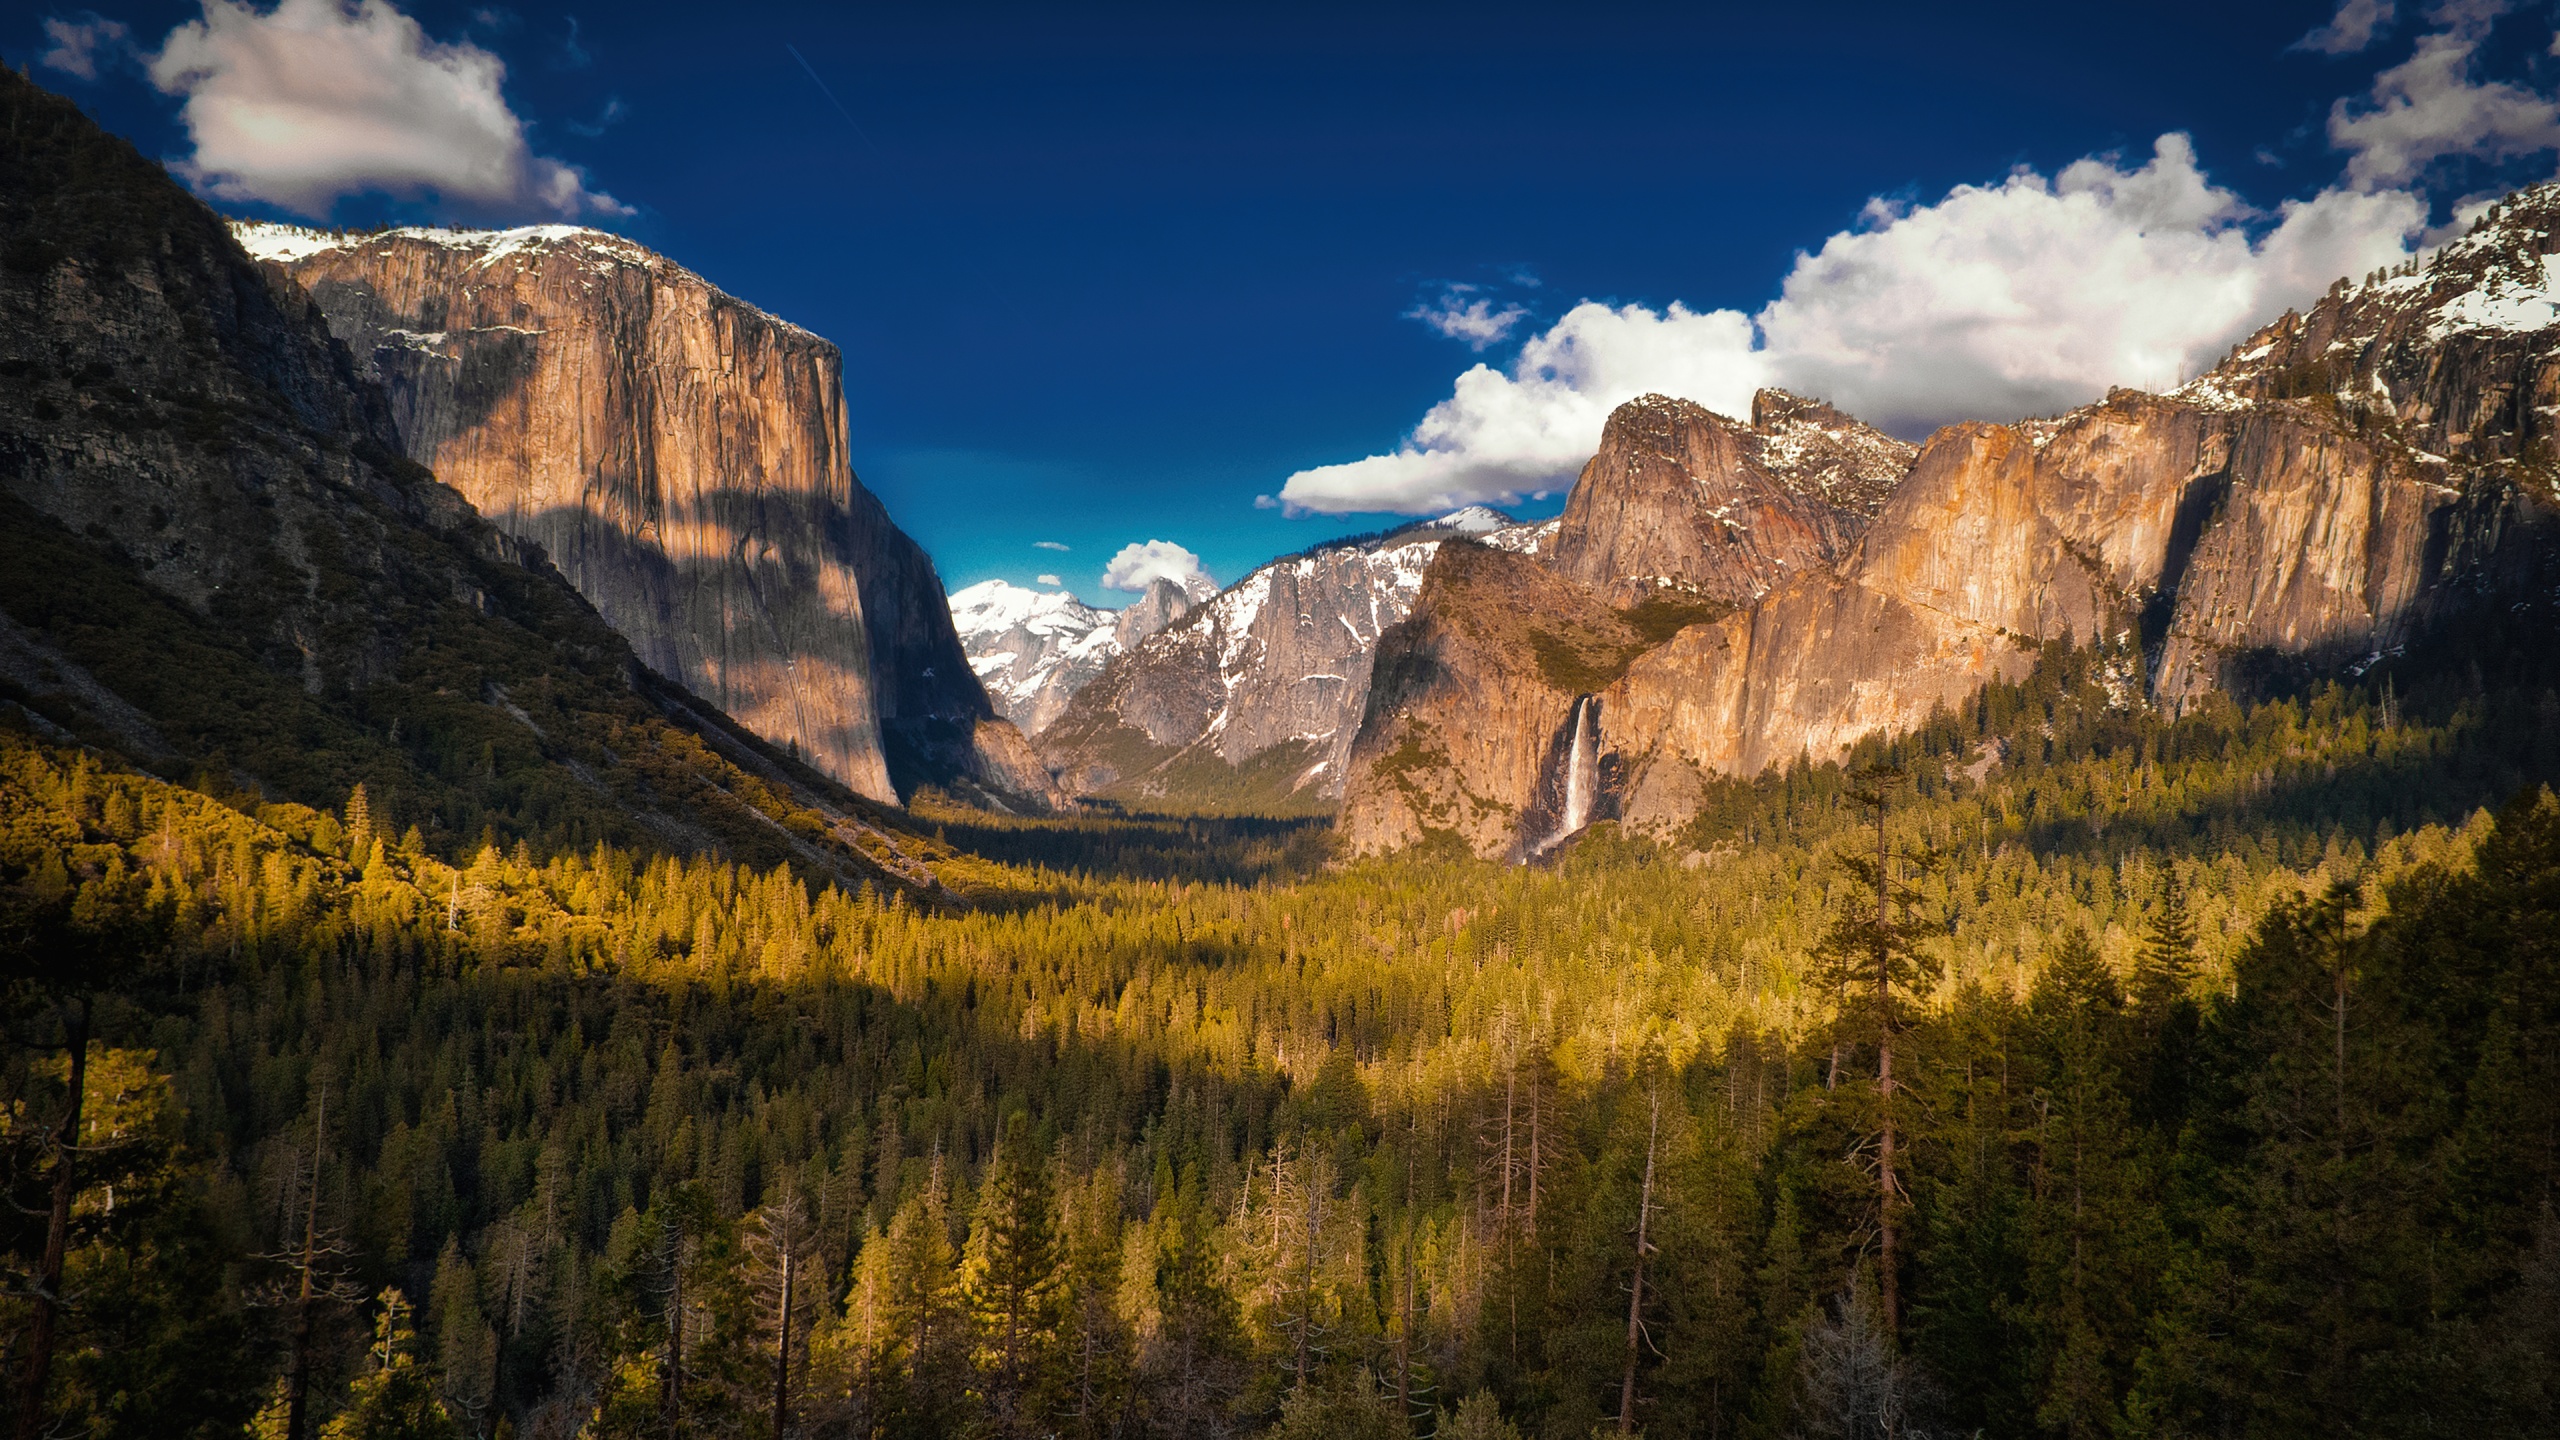 Thung lũng Yosemite là một trong những nơi đẹp nhất trên thế giới với các địa danh như Half Dome, El Capitan và Yosemite Falls. Hãy xem hình ảnh liên quan để khám phá và tận hưởng vẻ đẹp của thung lũng Yosemite.